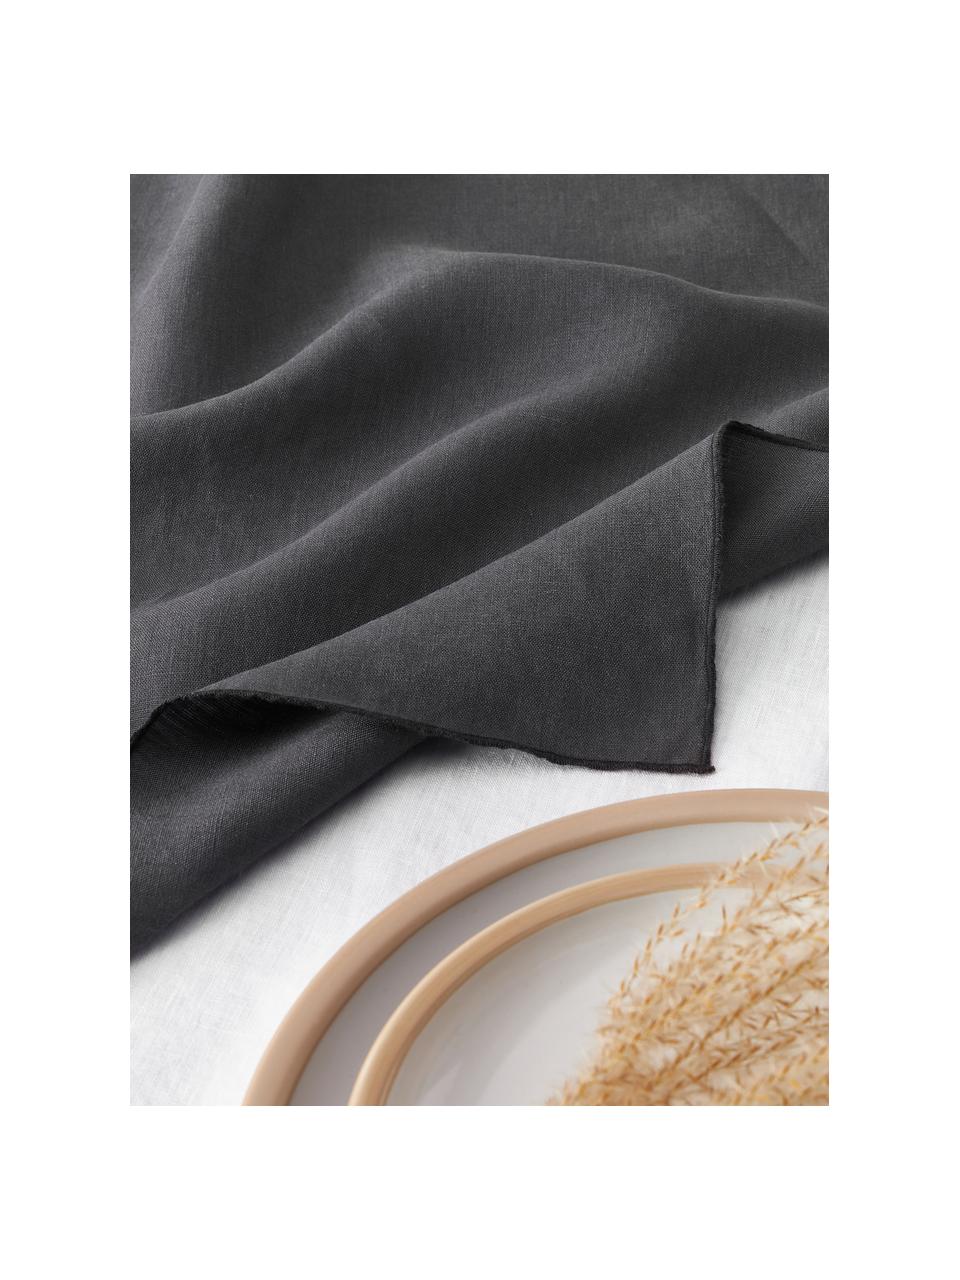 Linnen servetten Kennedy met bies, 4 stuks, 100% gewassen linnen

Linnen is een natuurlijke vezel die wordt gekenmerkt door ademend vermogen, duurzaamheid en zachtheid.

Het materiaal dat in dit product wordt gebruikt, is getest op schadelijke stoffen en gecertificeerd volgens STANDARD 100 door OEKO-TEX®, 6760CIT, CITEVE, Antraciet, zwart, B 45 x L 45 cm